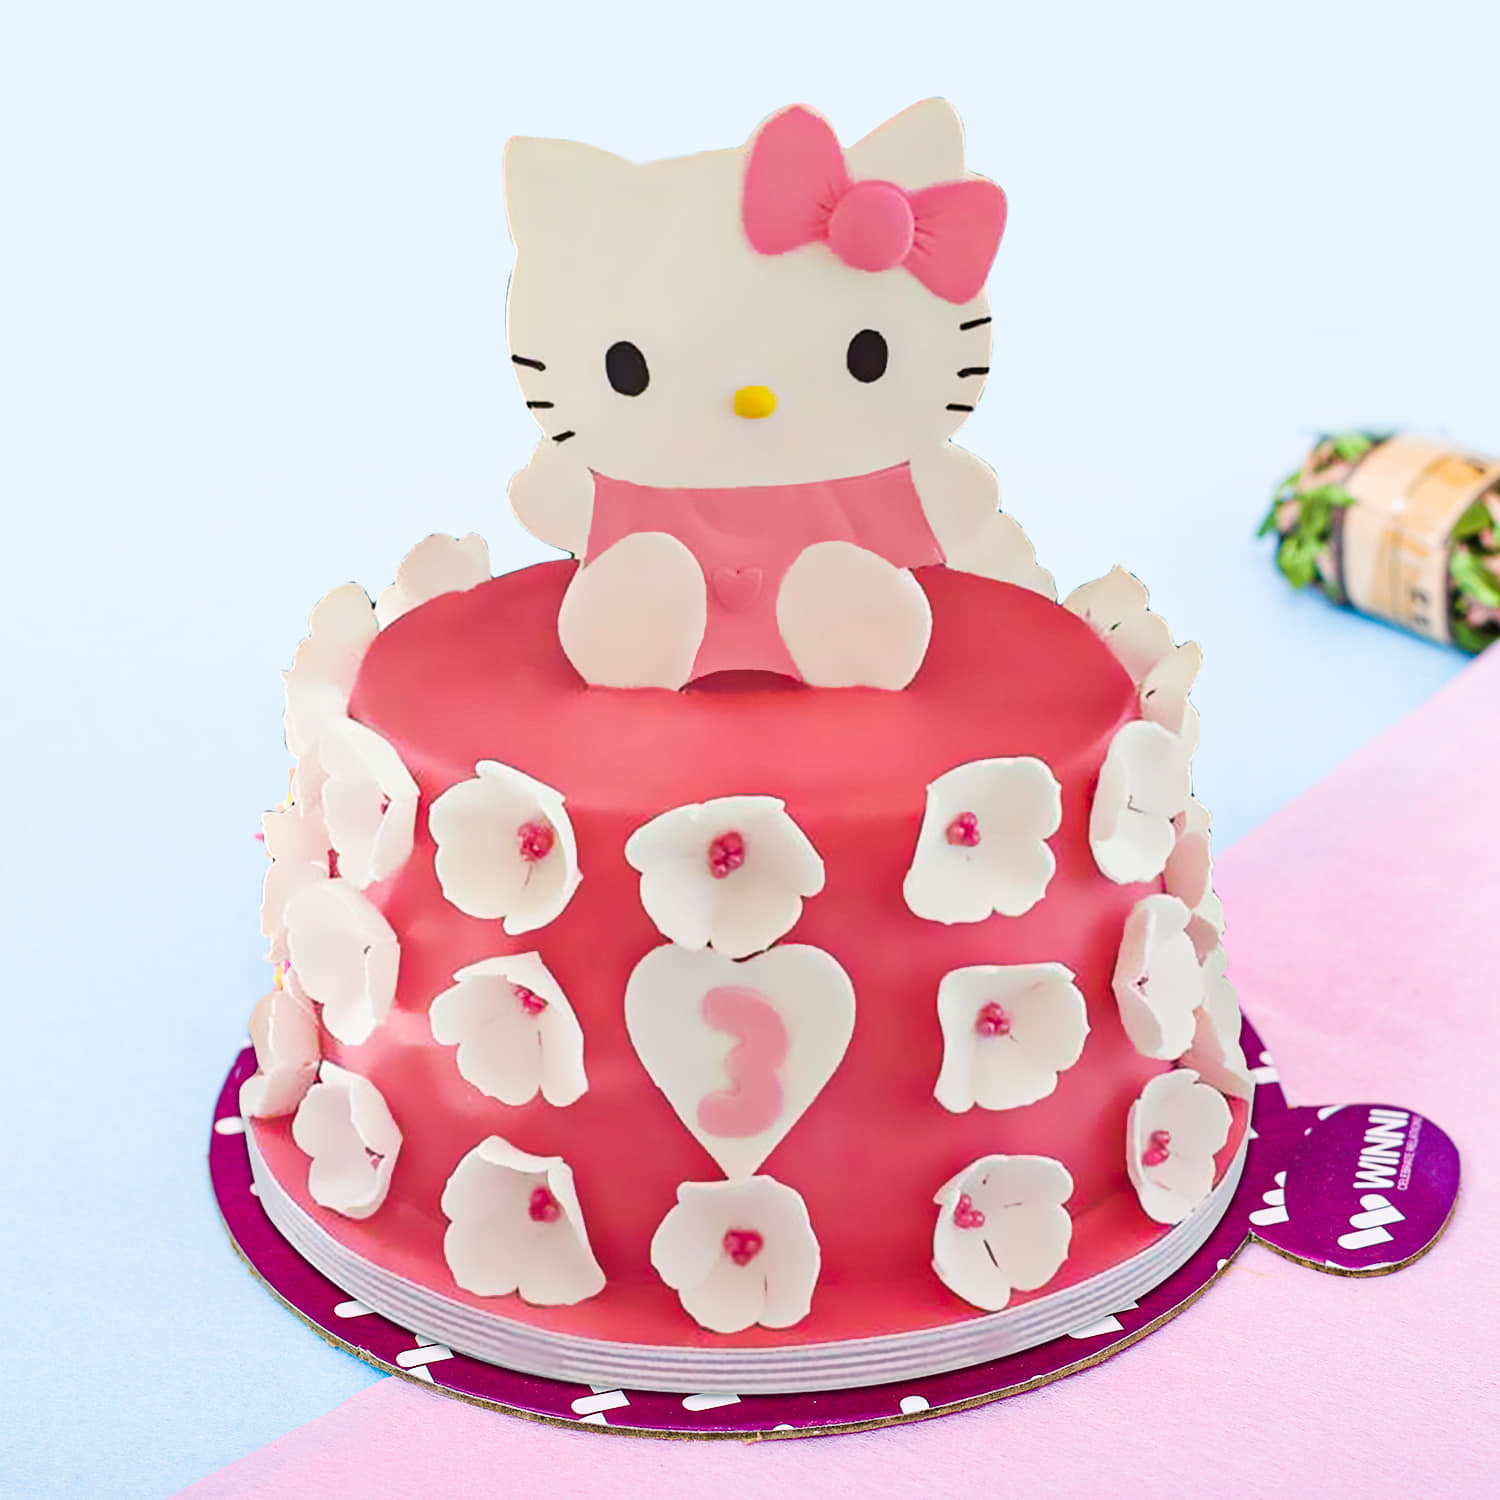 Easy Kitten DIY Girls Birthday Cake Kit | Cake 2 The Rescue